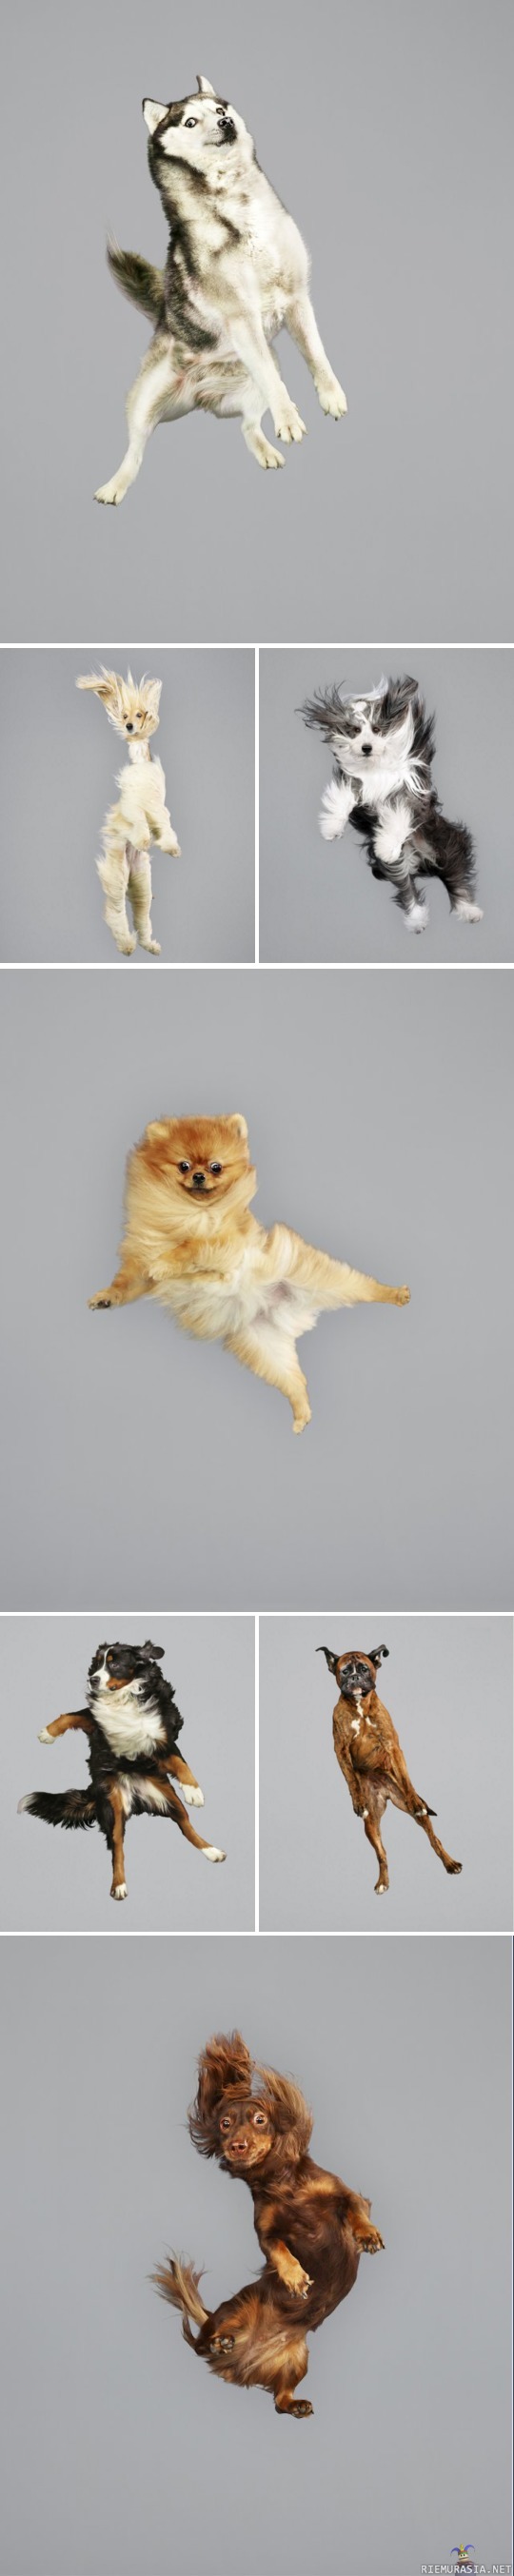 Koirat ilmassa - Saksalaisen valokuvaajan Julia Christen Freestyle Series.
http://www.juliachriste.de/